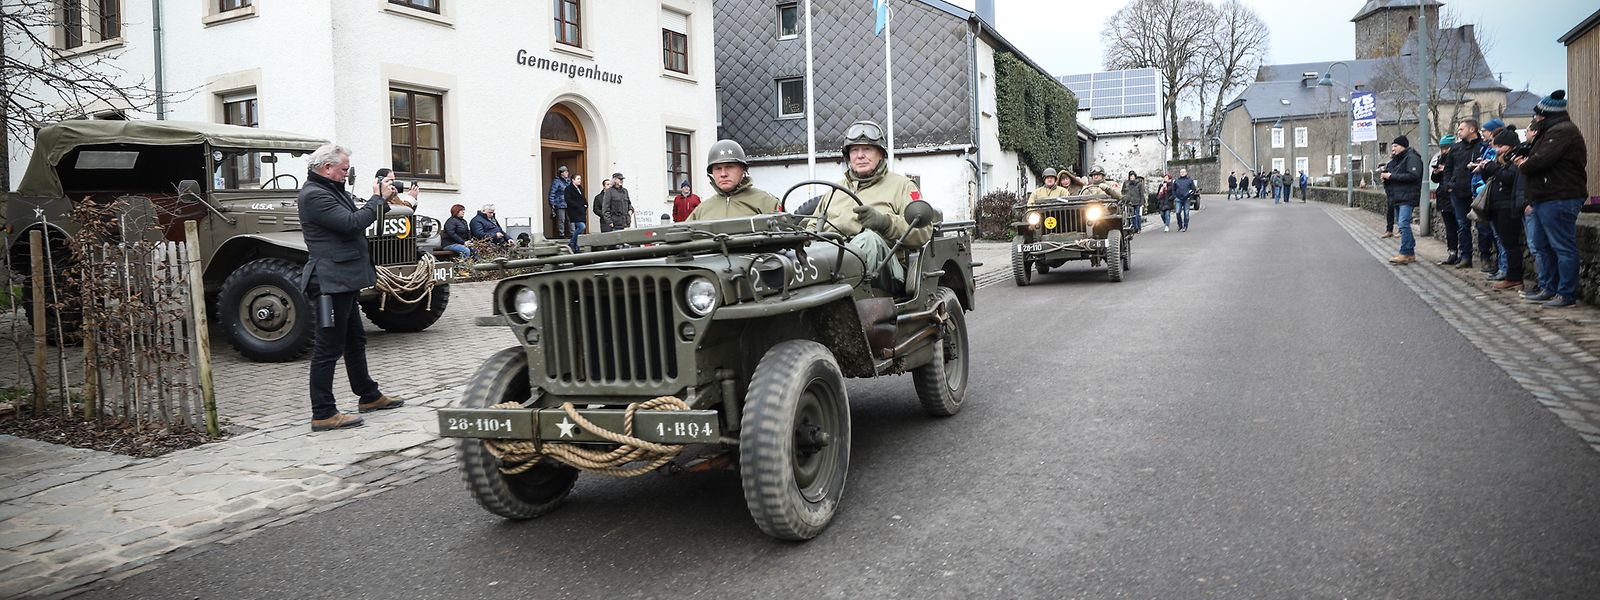 Mit historischen Militärfahrzeugen in allen Gassen schien Munshausen am Samstag regelrecht an den Thanksgiving-Tag des Jahres 1944 zurückkatapultiert.